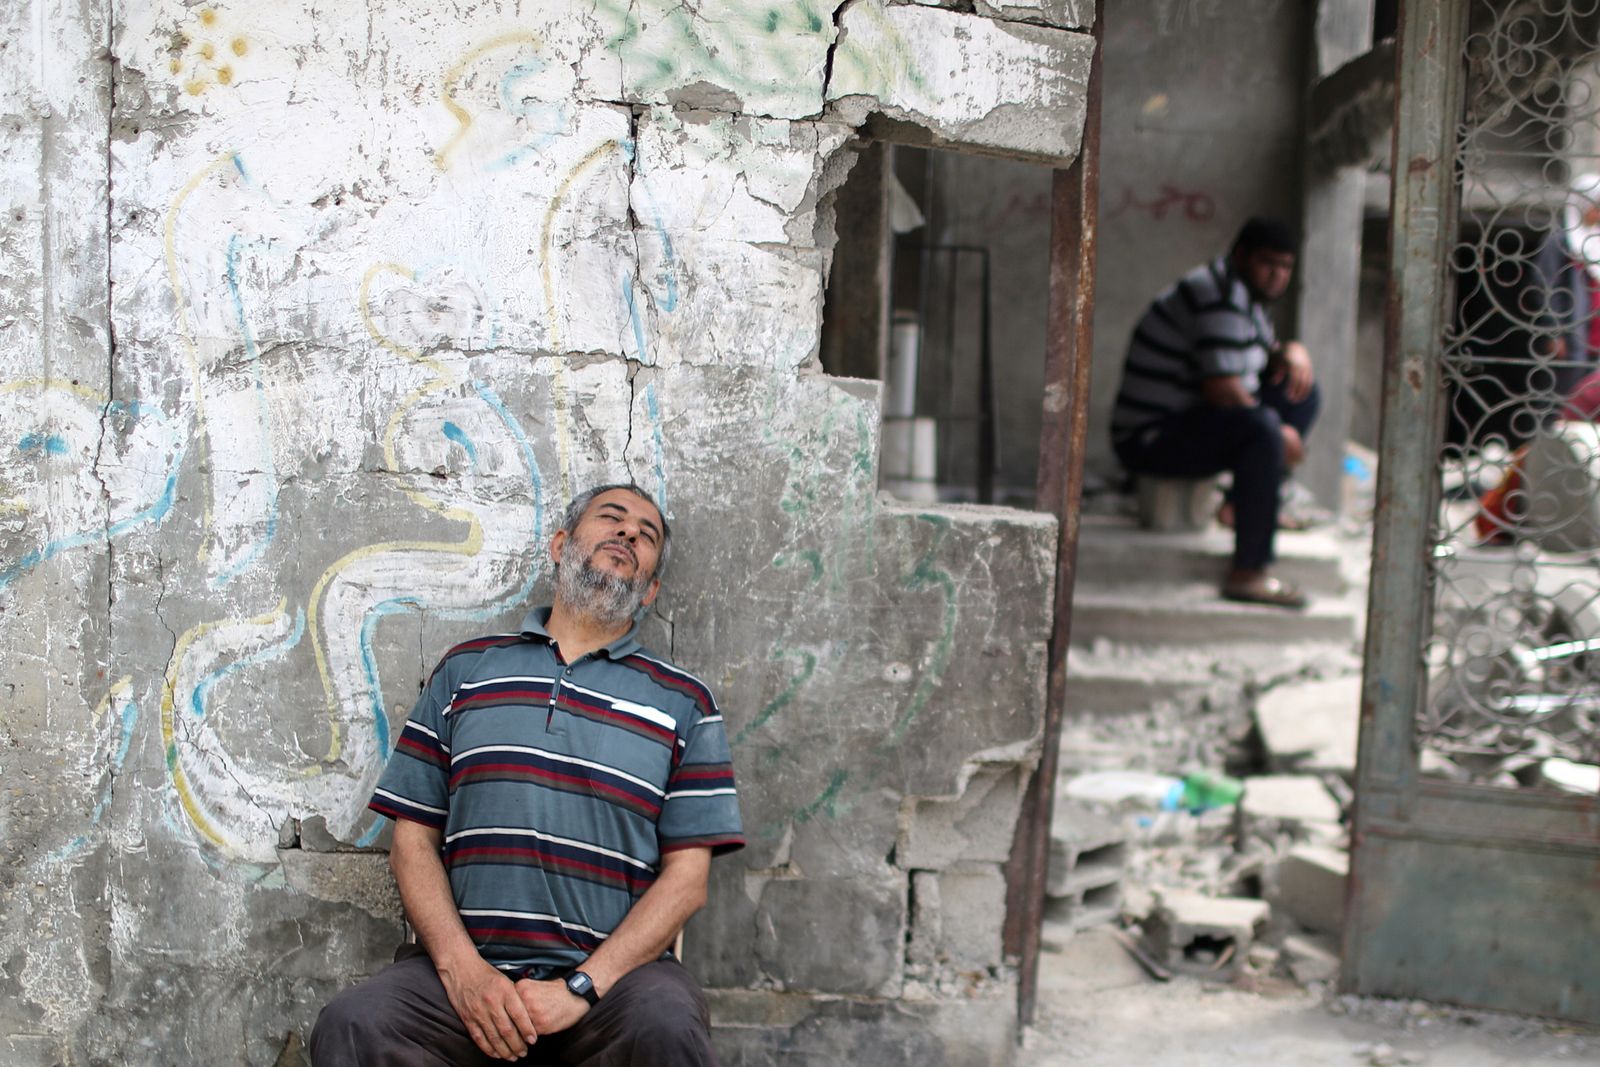 فلسطيني يستريح بعد عودته إلى منزله المدمر في بيت حانون شمال قطاع غزة - 21 مايو 2021 - REUTERS